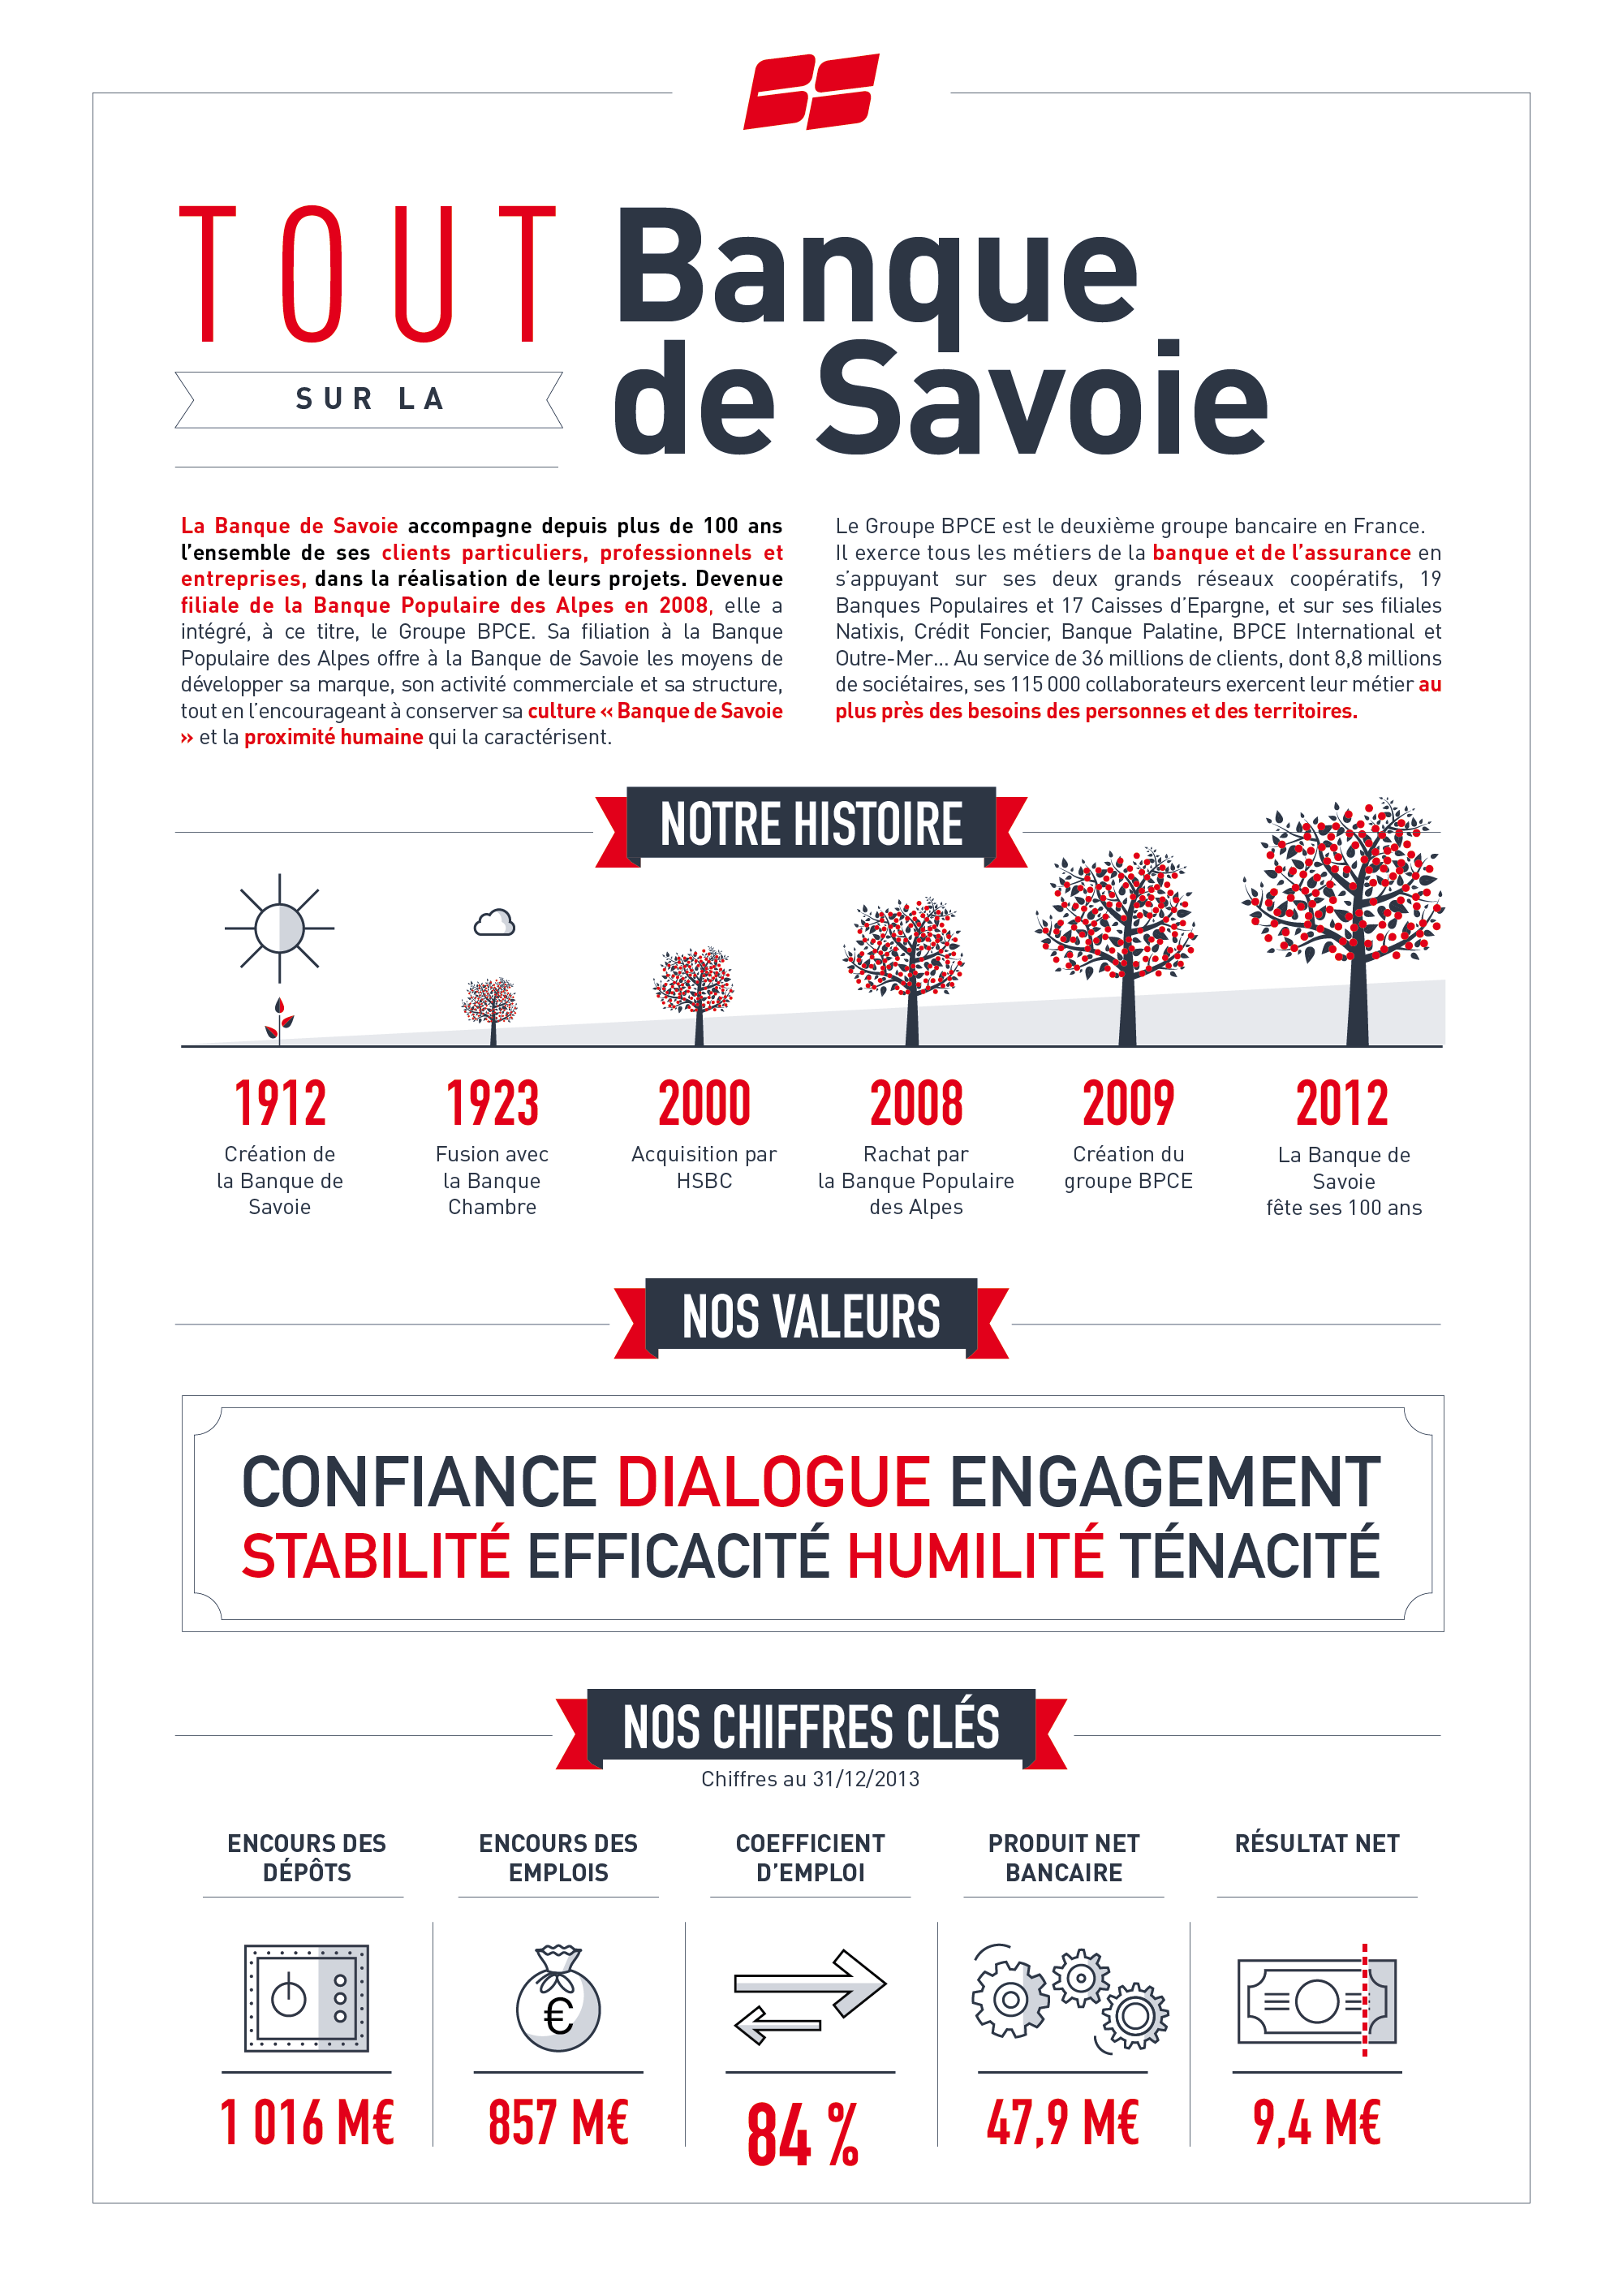 Présentation de la Banque de Savoie 1/3 © ÉCLAIRAGE PUBLIC